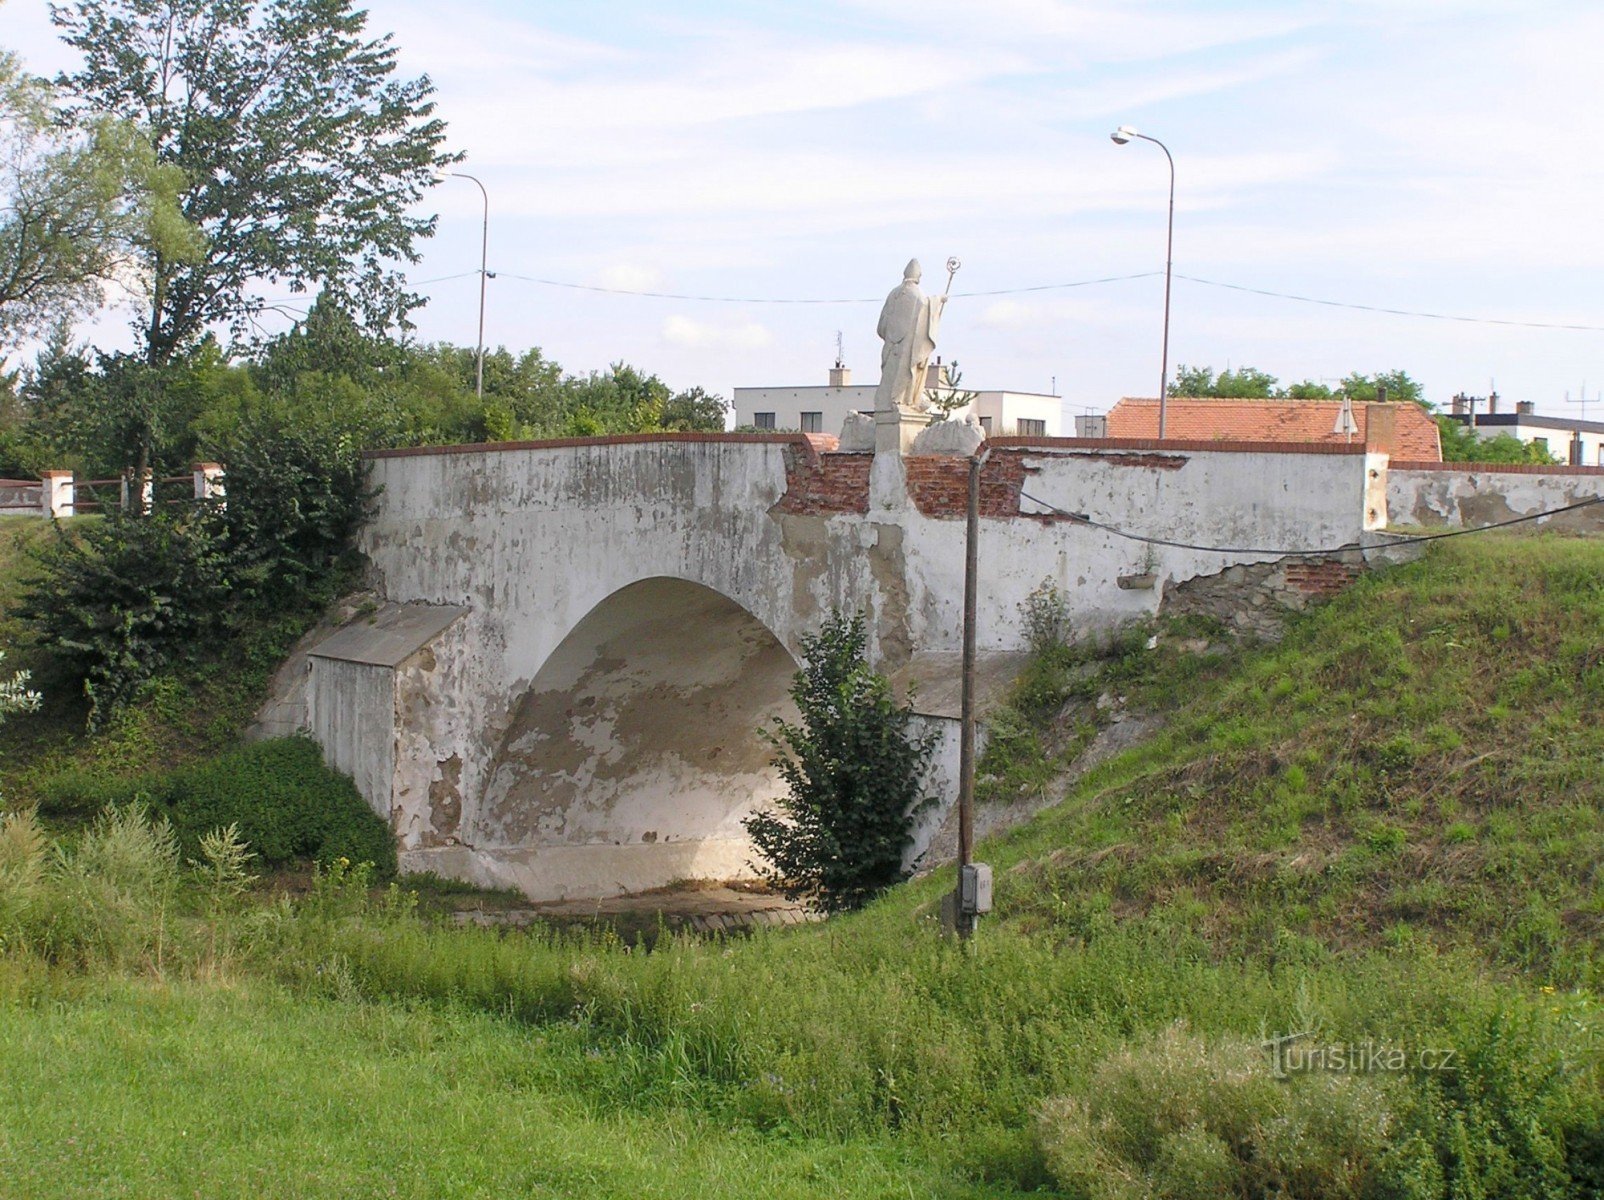 barokk közúti híd - a falu északnyugati széle, a Znojmo-Moravské Budějovice út közelében